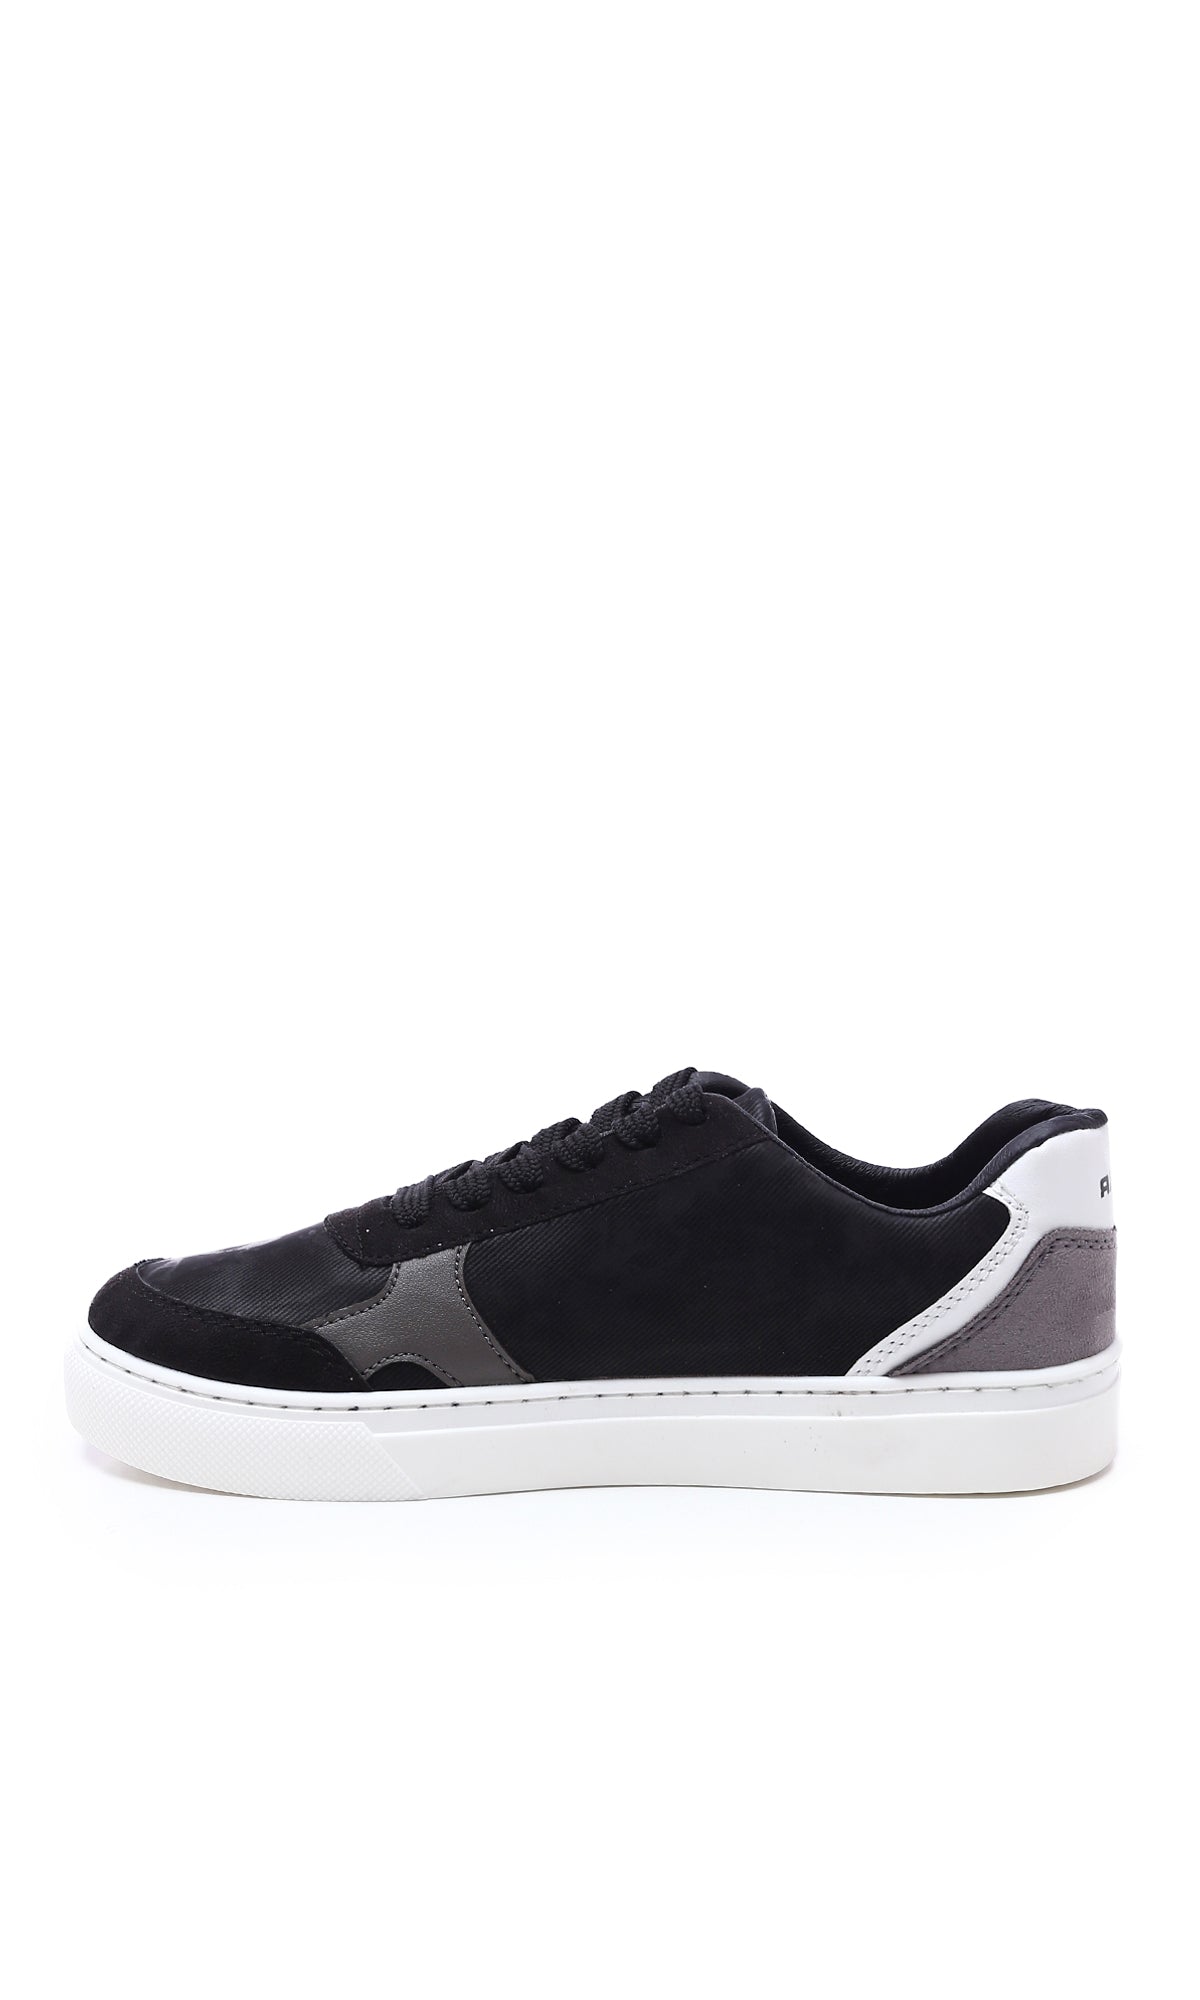 O176362 Tri-Tone Round Toecap Suede Sneakers - Black, White & Grey